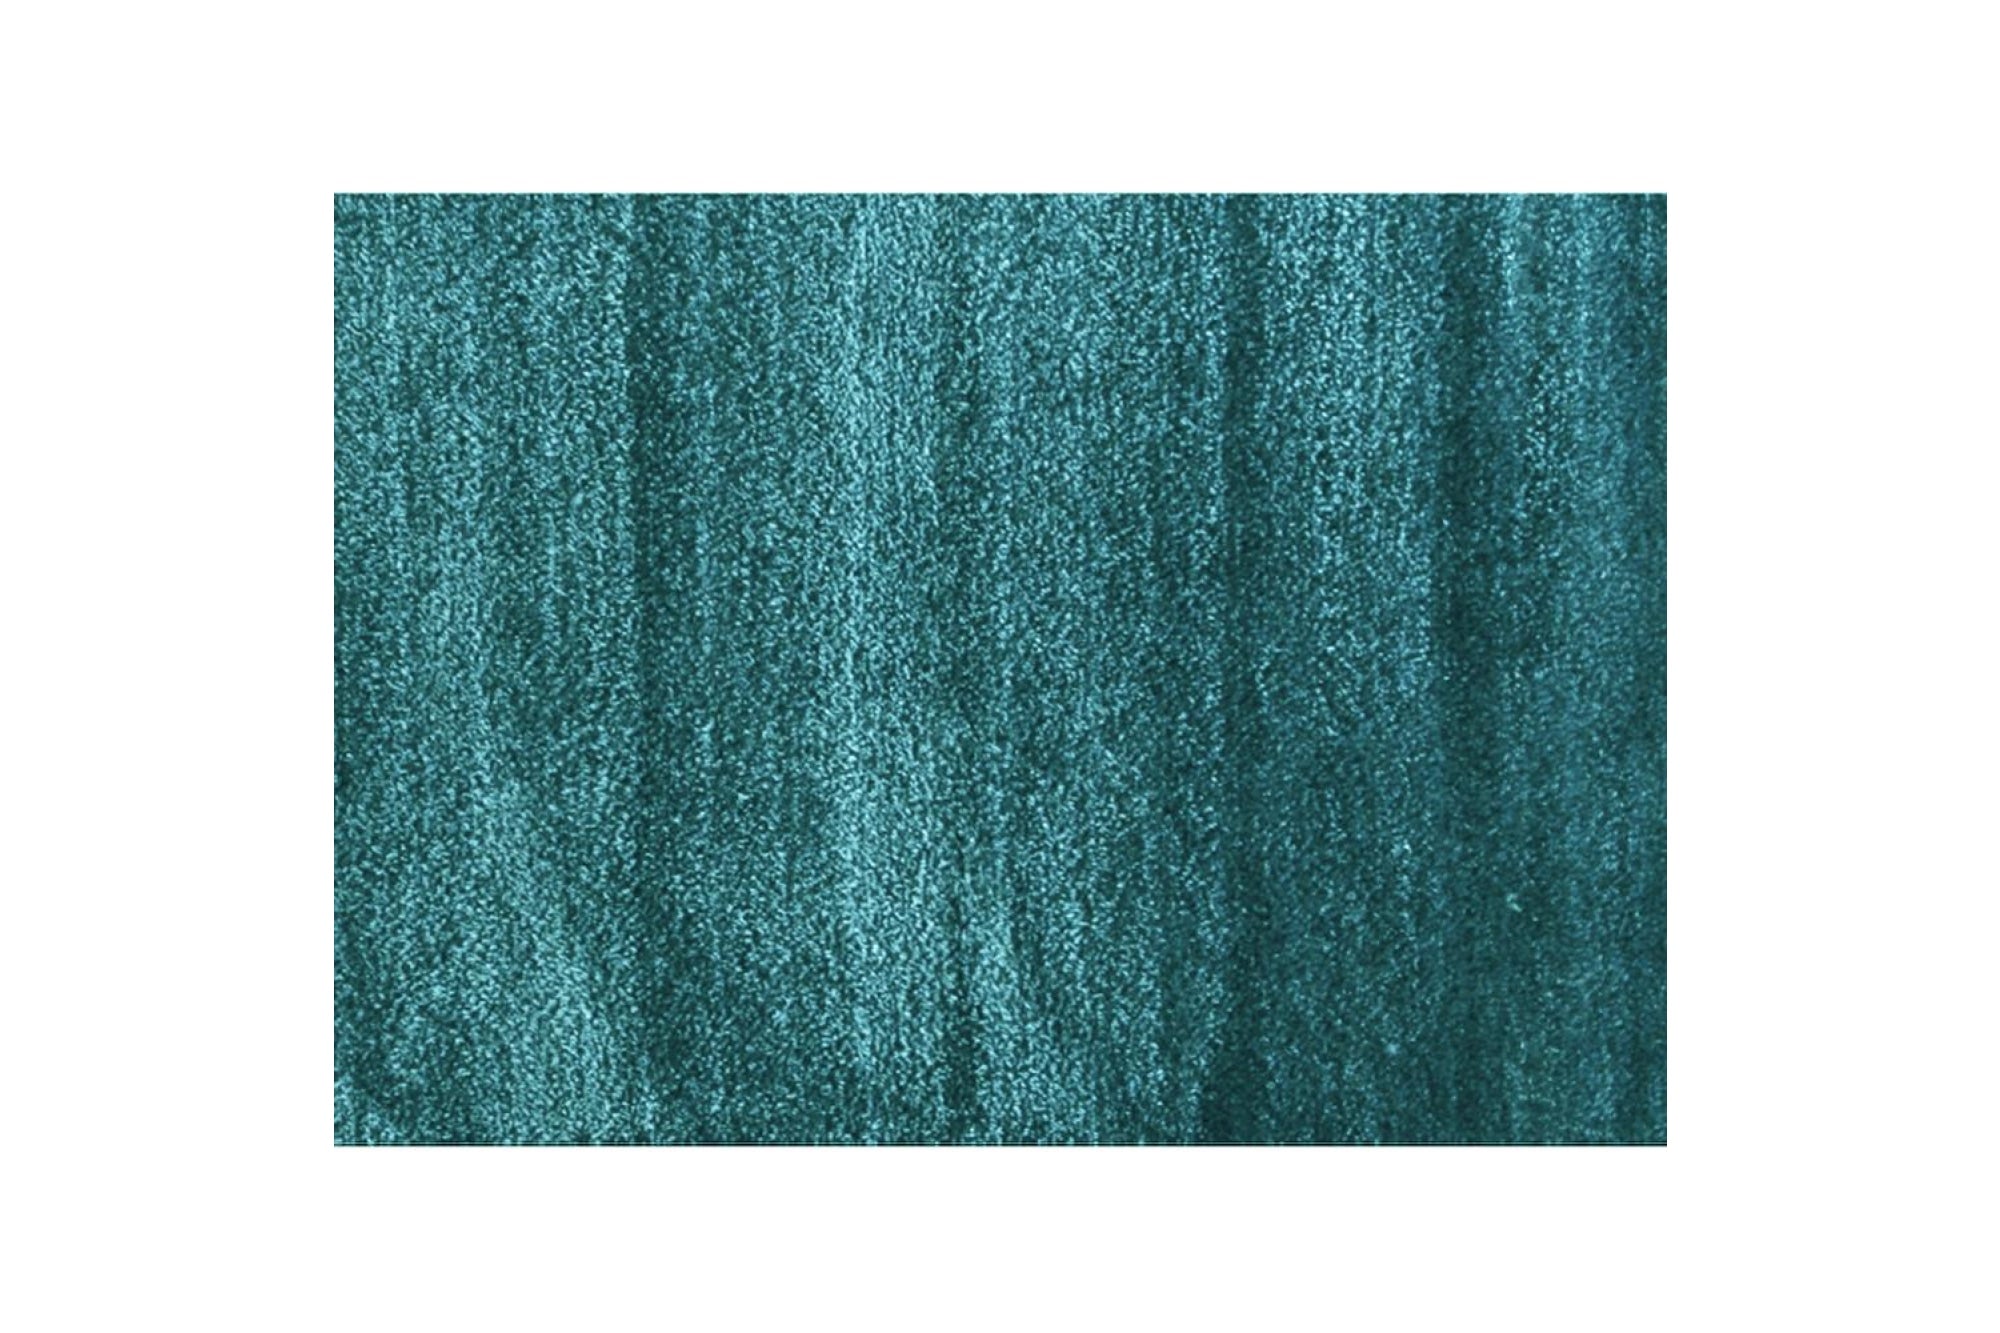 ARUNA kék polyester szőnyeg 140x200cm